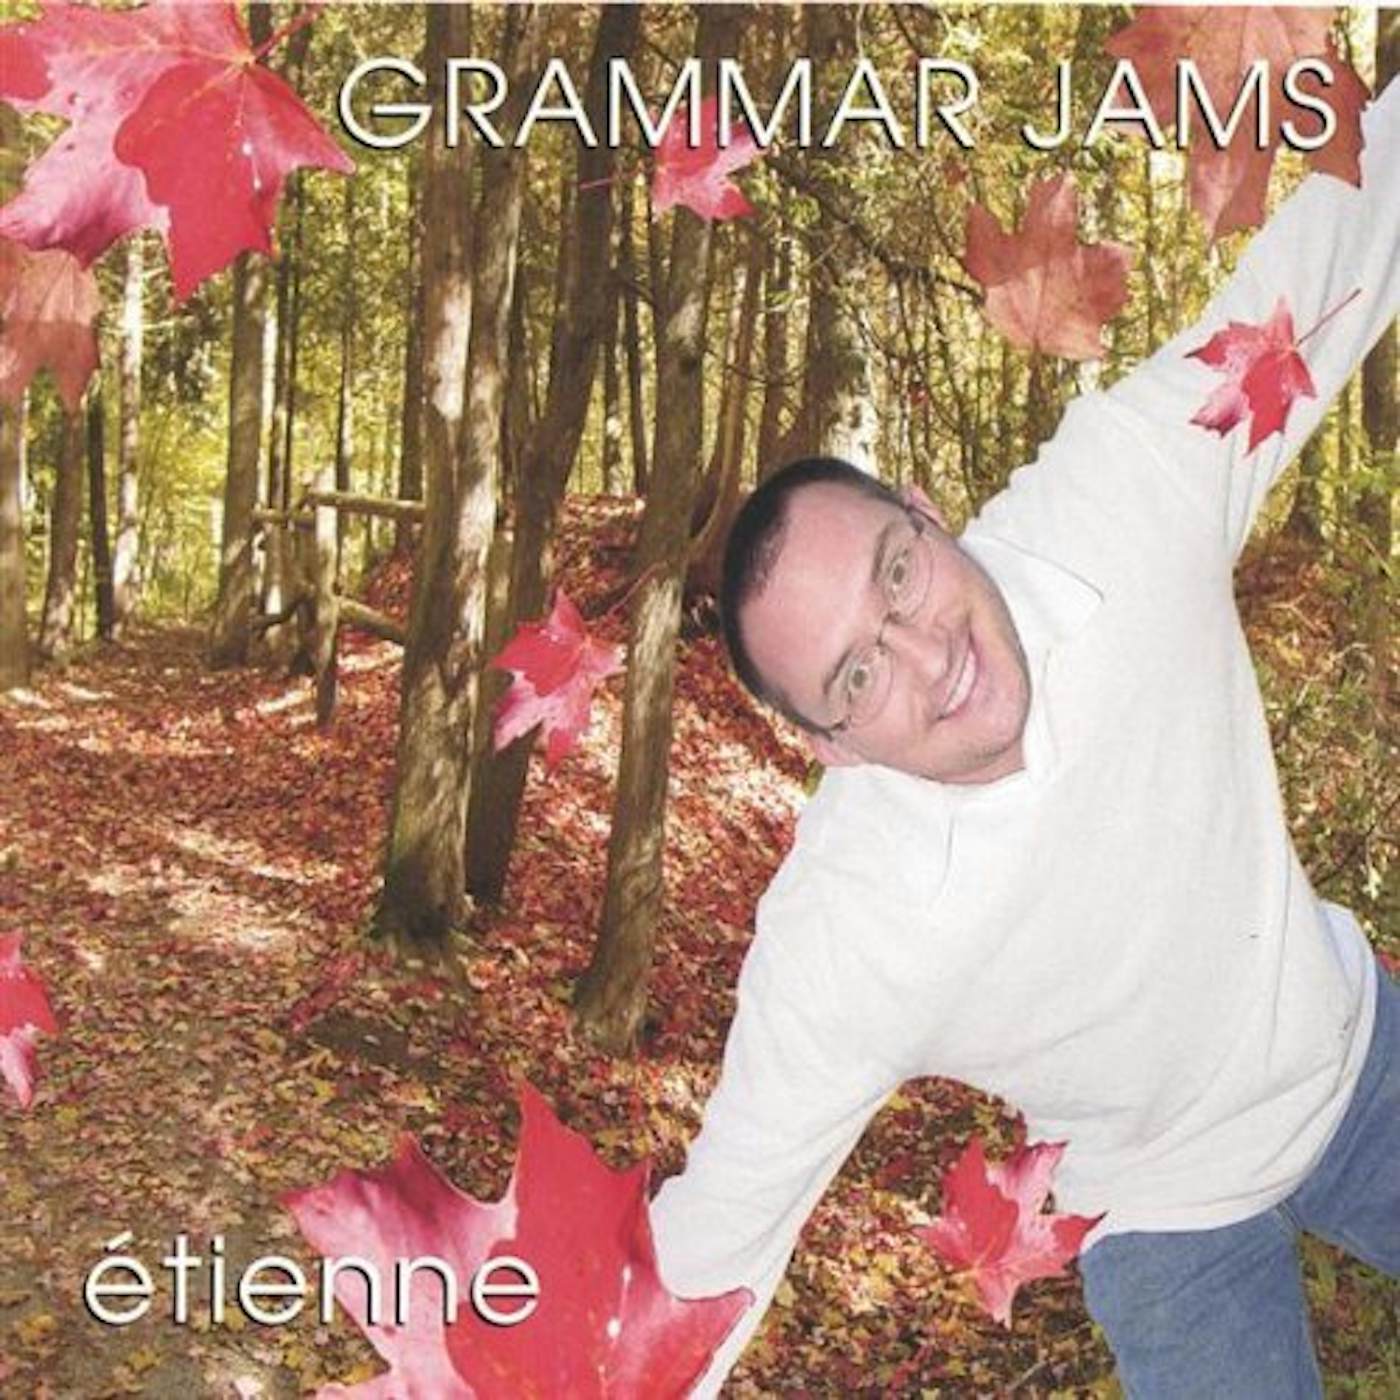 Etienne GRAMMAR JAMS 1 CD